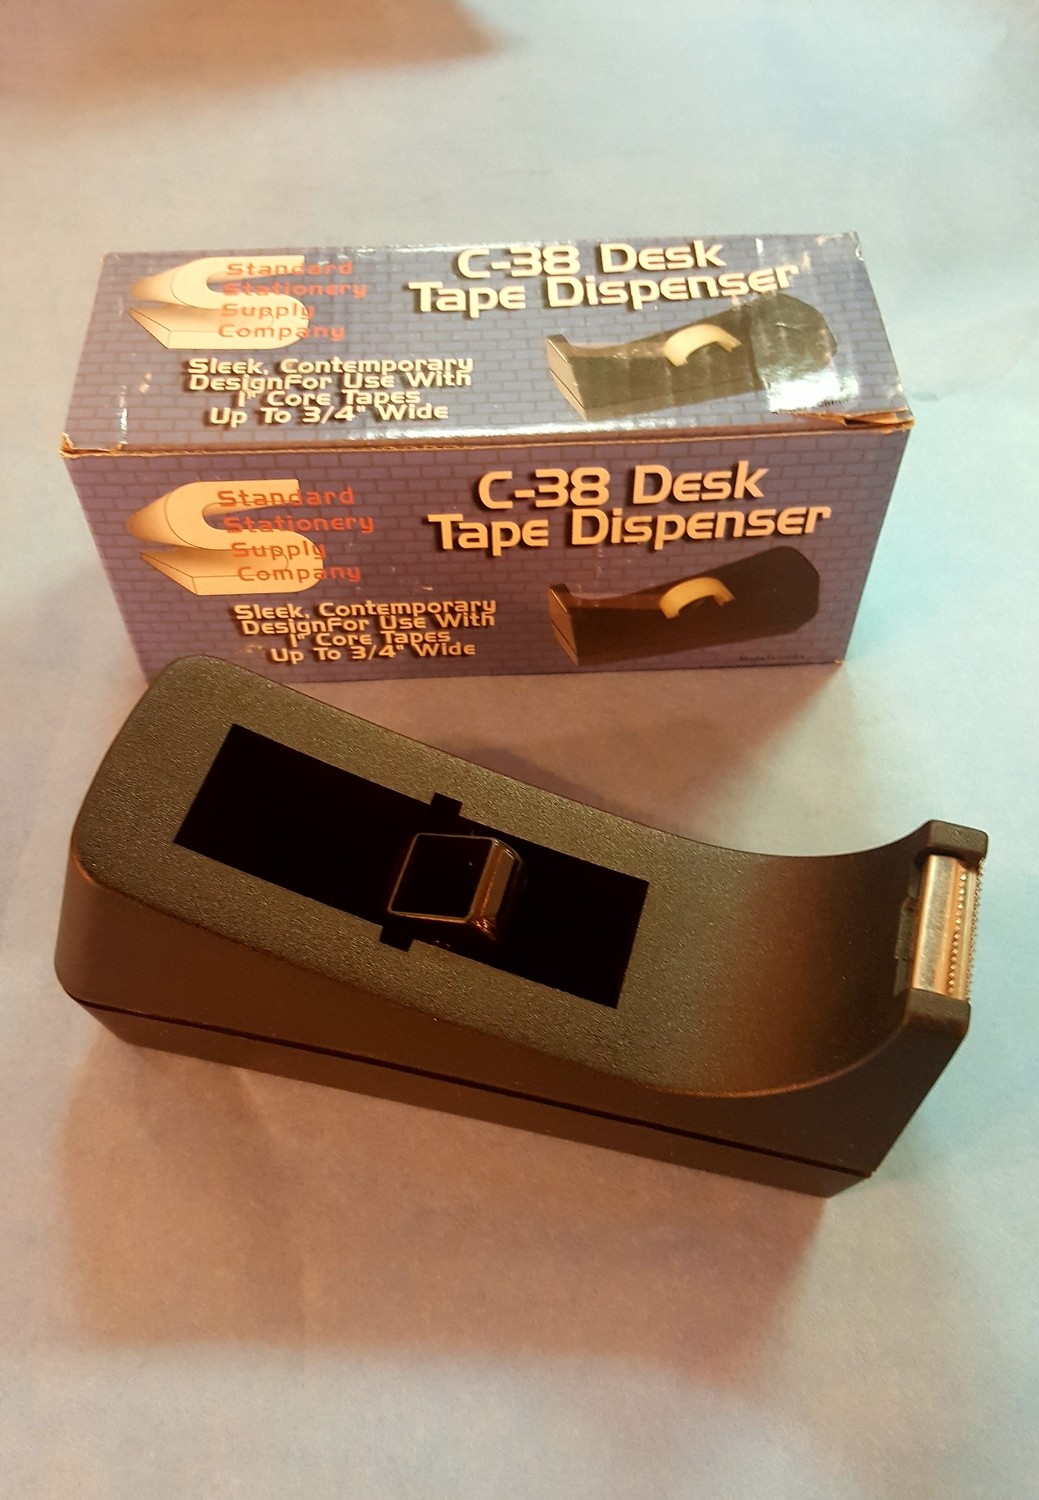 Tape Dispensers, Desk